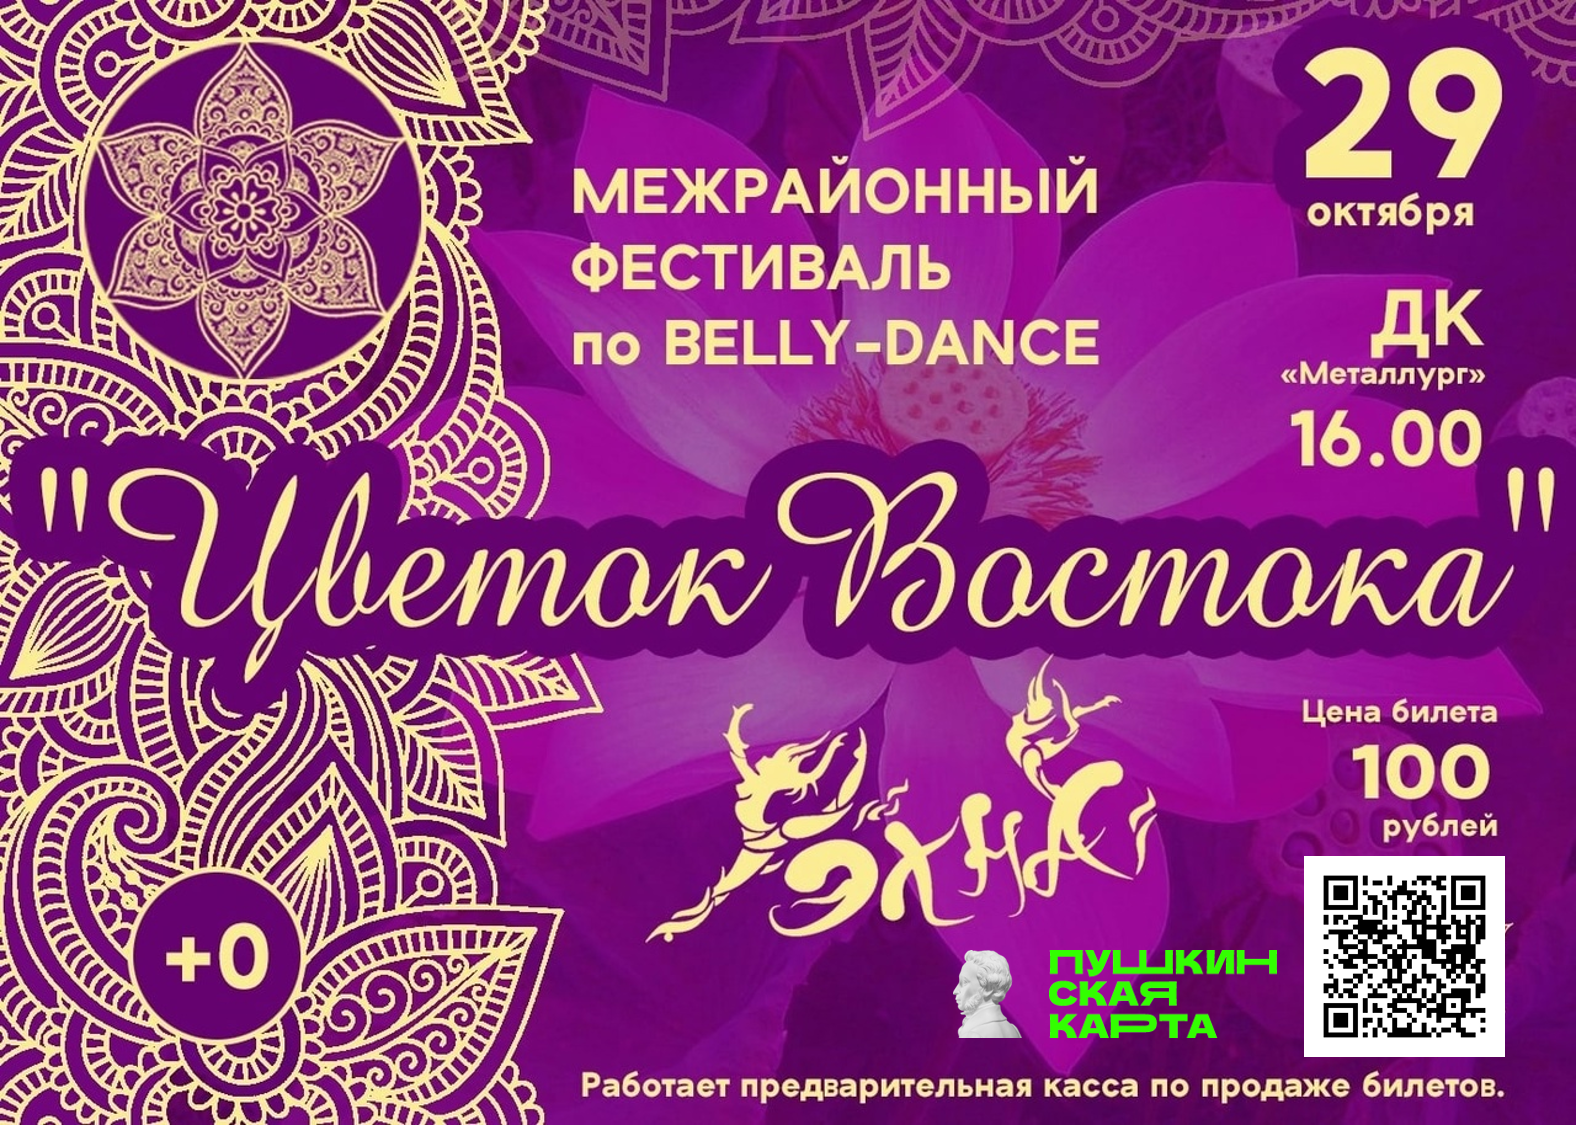 Межрайонный фестиваль по belly-dance «Цветок Востока».